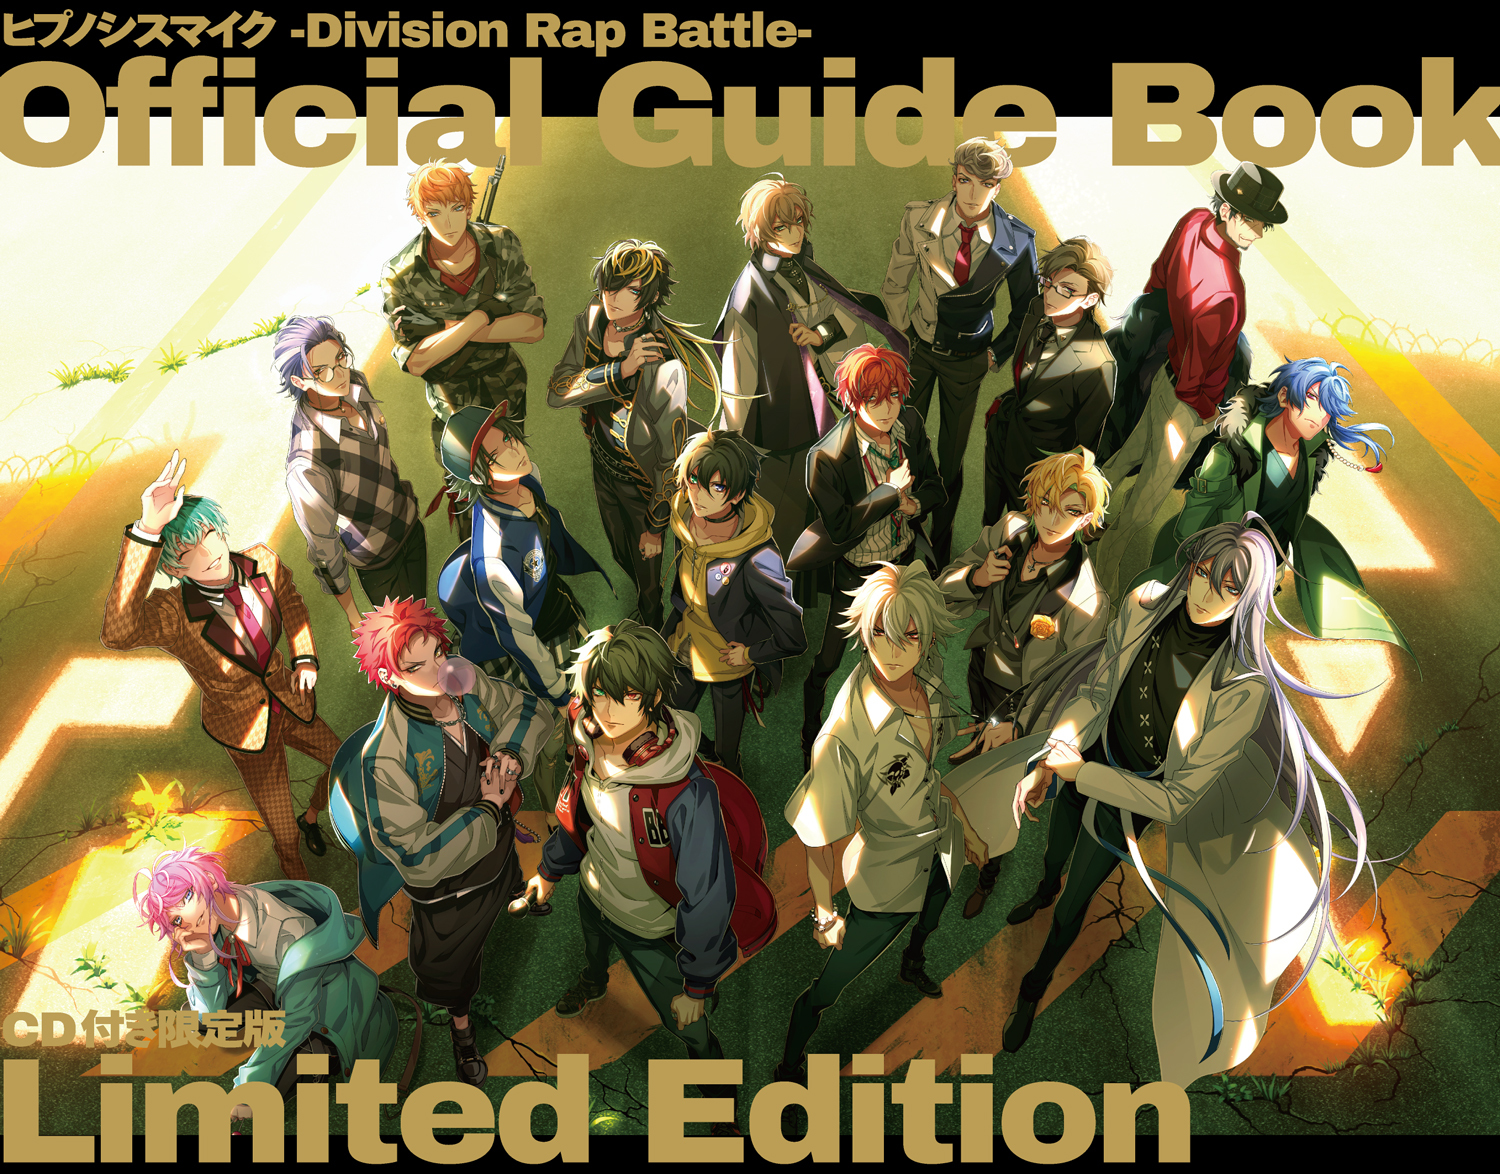 「ヒプノシスマイク-Division Rap Battle- Official Guide Book」新規描き下ろしイラスト (C) King Record Co., Ltd. All rights reserved.